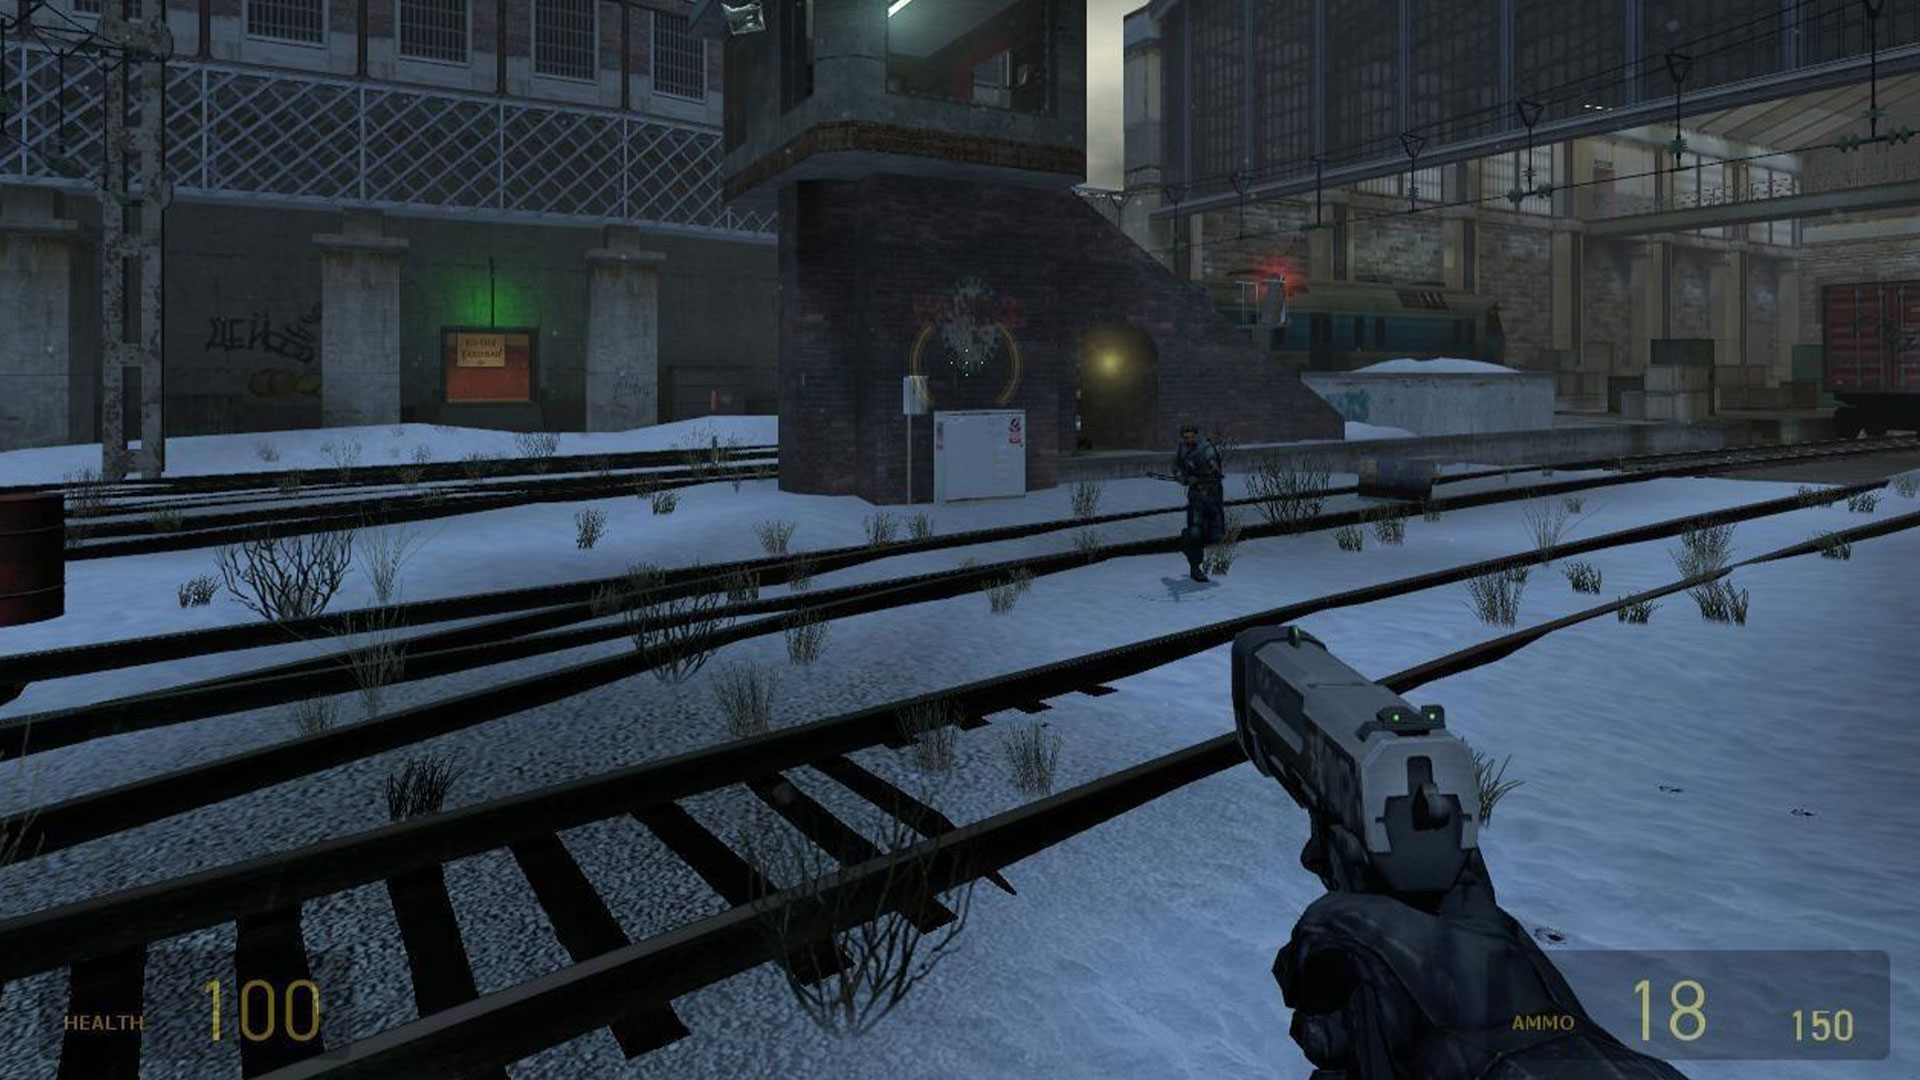 Half-Life 2 deathmatch captura de pantalla que muestra la acción multijugador en línea